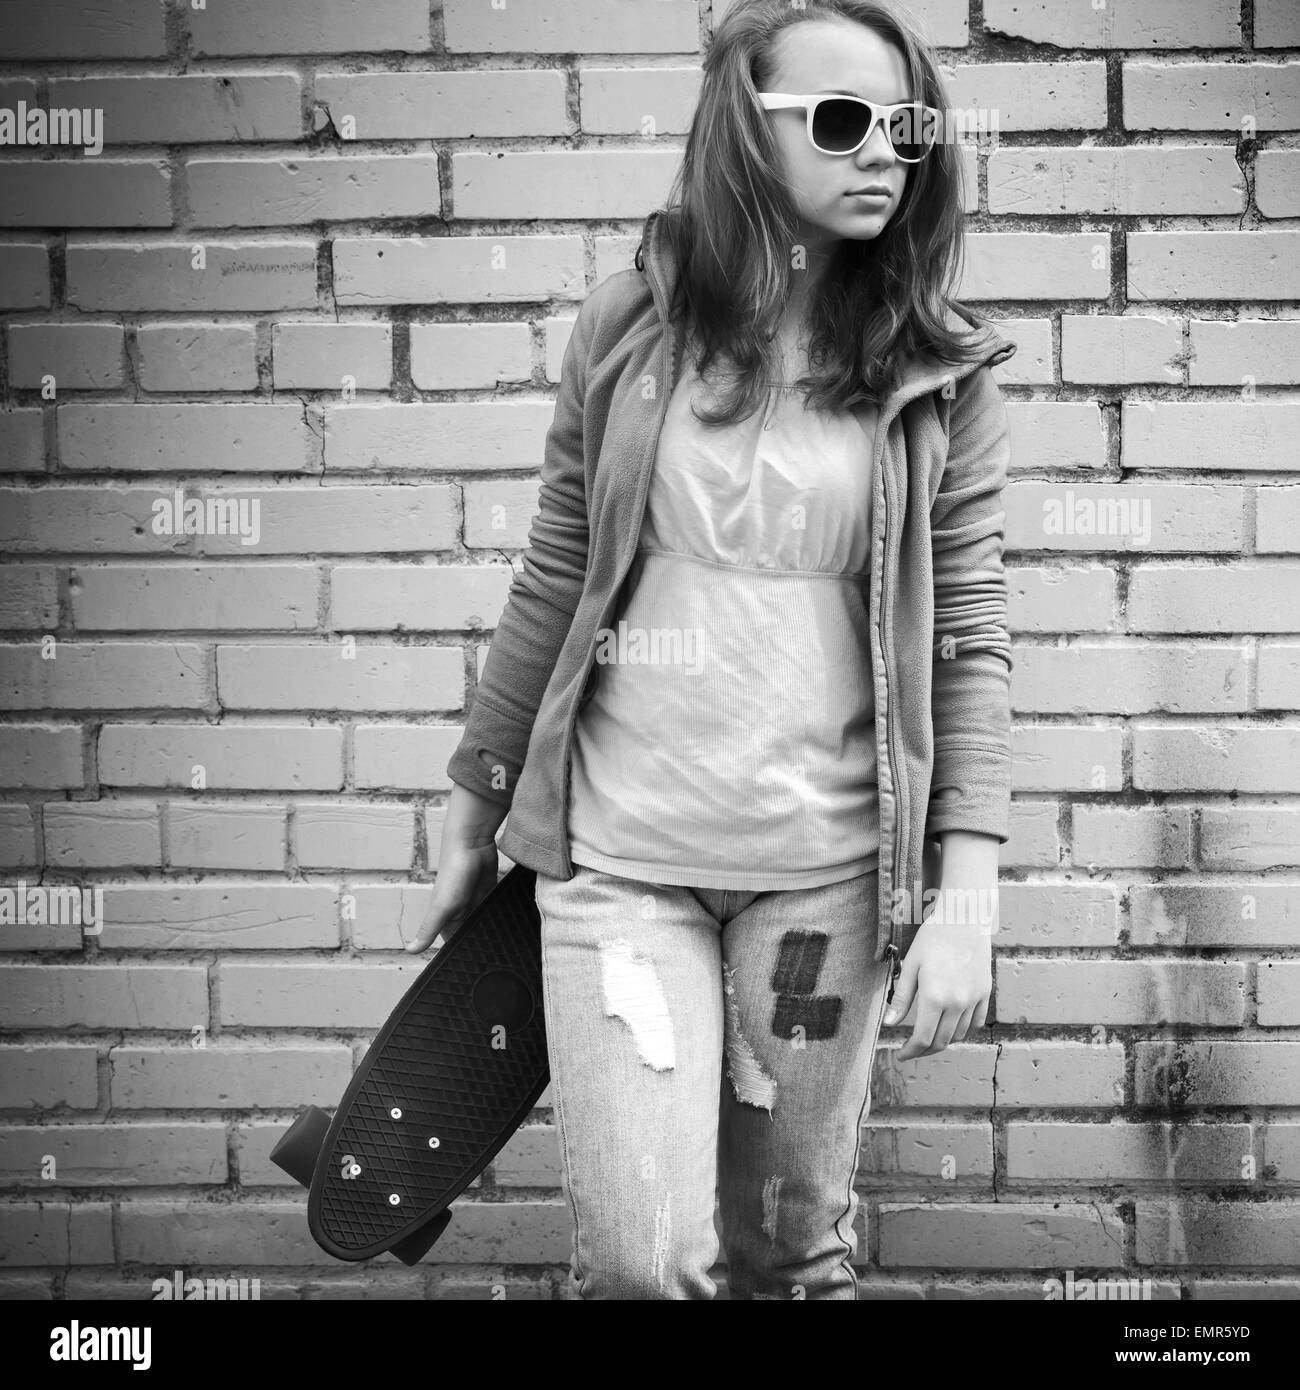 Adolescente blonde en jeans et lunettes détient plus de skateboard urban mur de briques, l'arrière-plan photo monochrome Banque D'Images